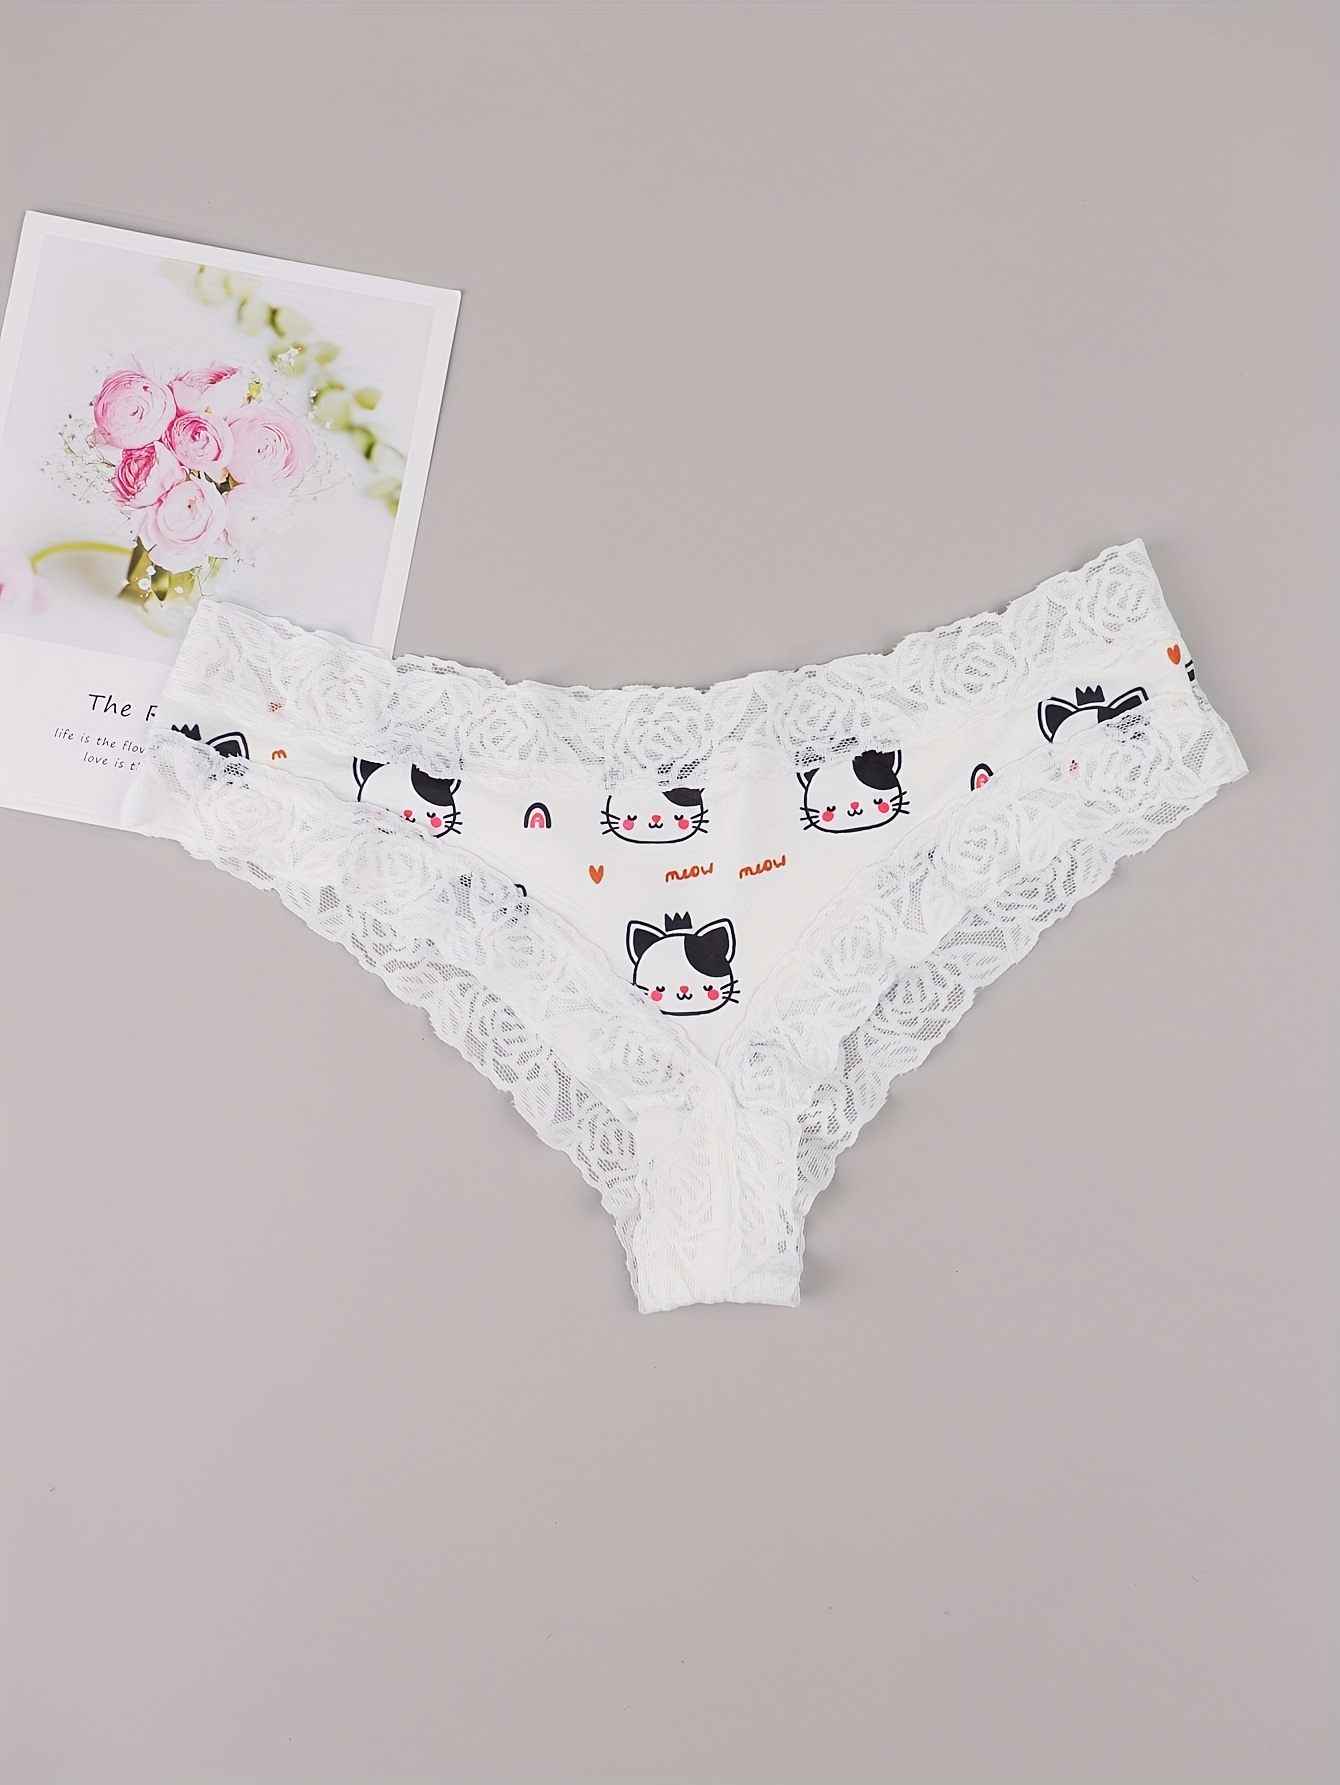 Plus Size Women's Lingerie Panties Printed Flower Underwear Cheeky